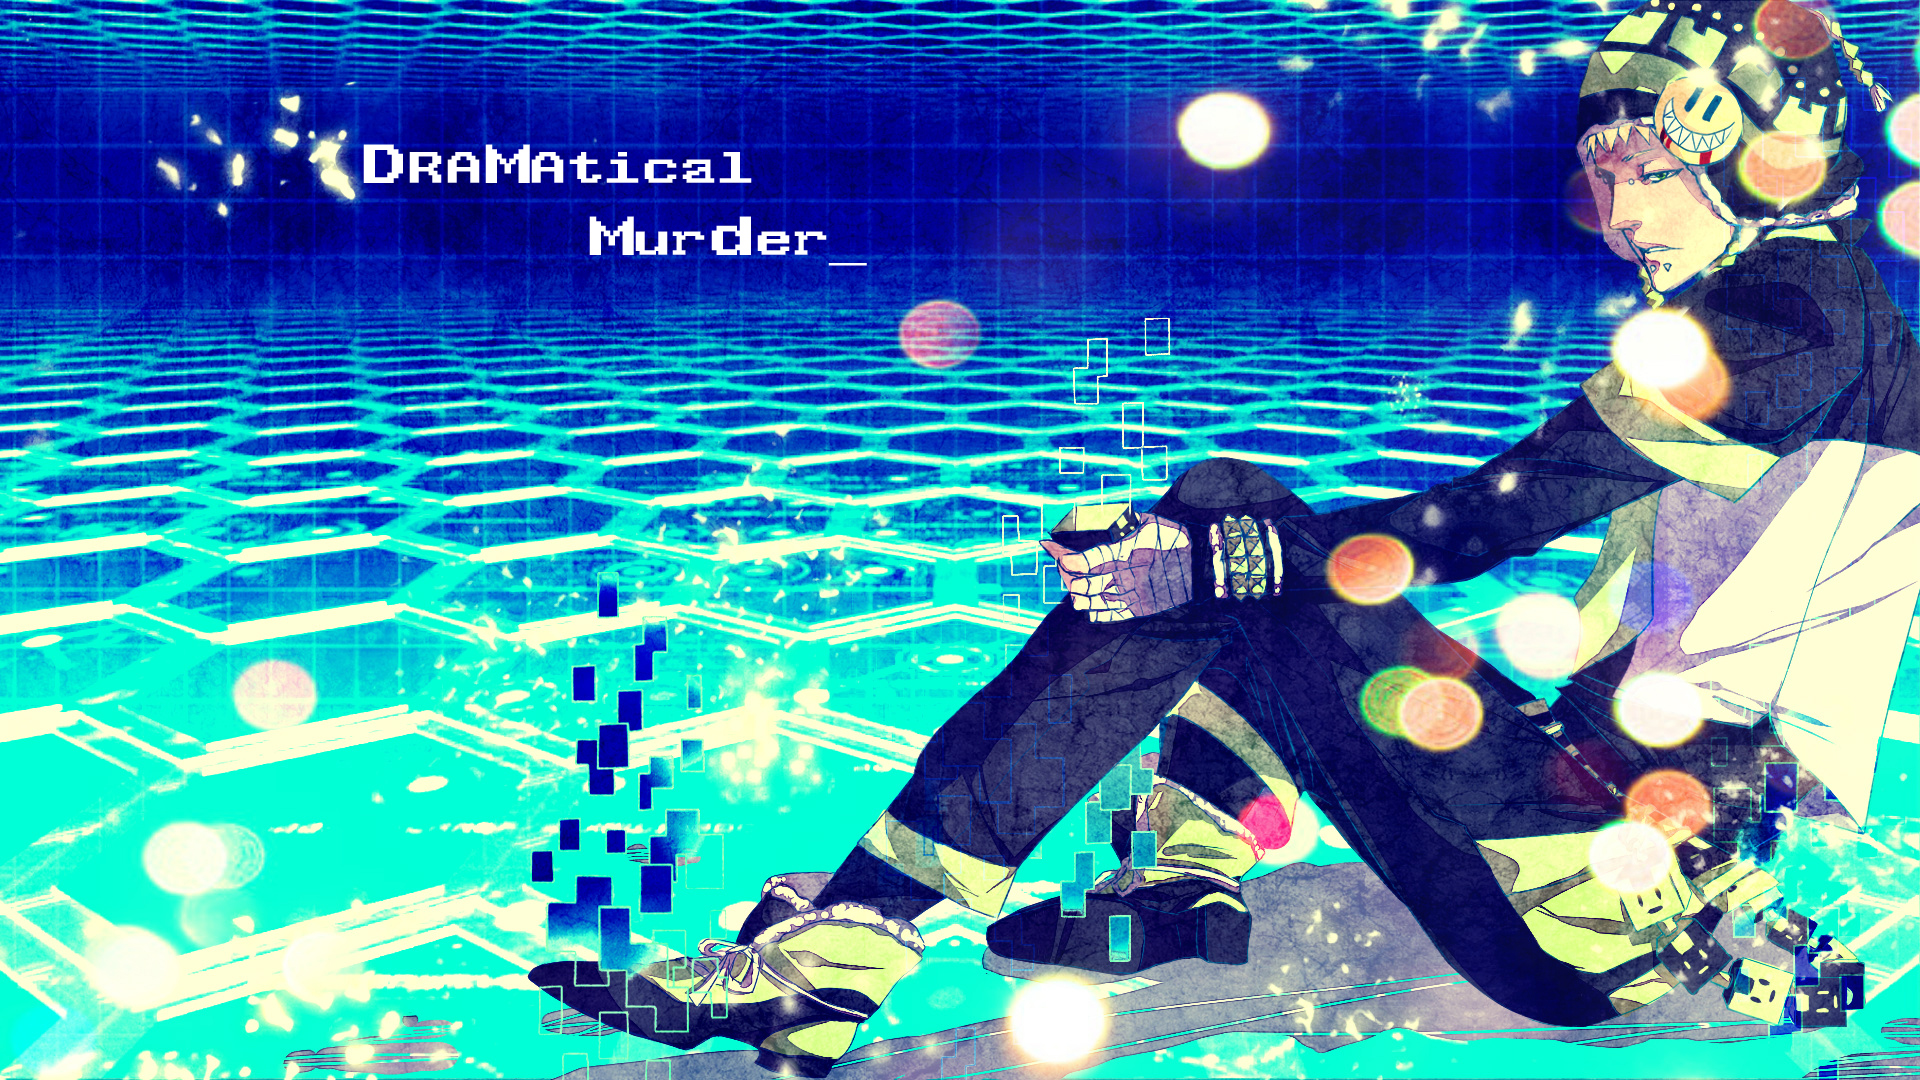 Dramatical Murder, Wallpaper - Dramatical Murder Pc Background , HD Wallpaper & Backgrounds